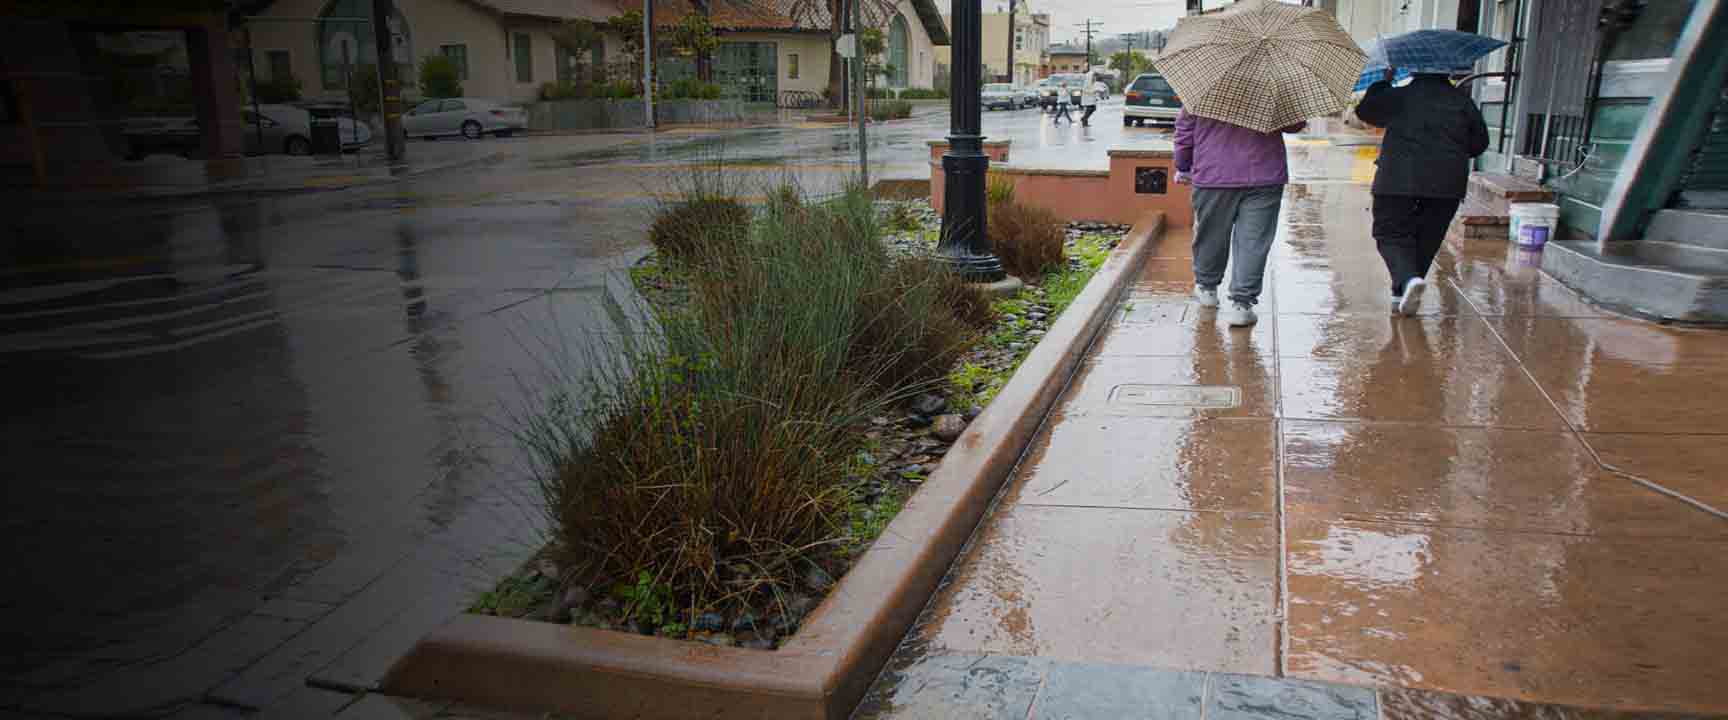 Mọi người đi bộ dưới mưa bên cạnh một khu vườn đi bộ bên cạnh hoạt động như một cơ sở hạ tầng xanh giúp quản lý nước mưa chảy tràn.